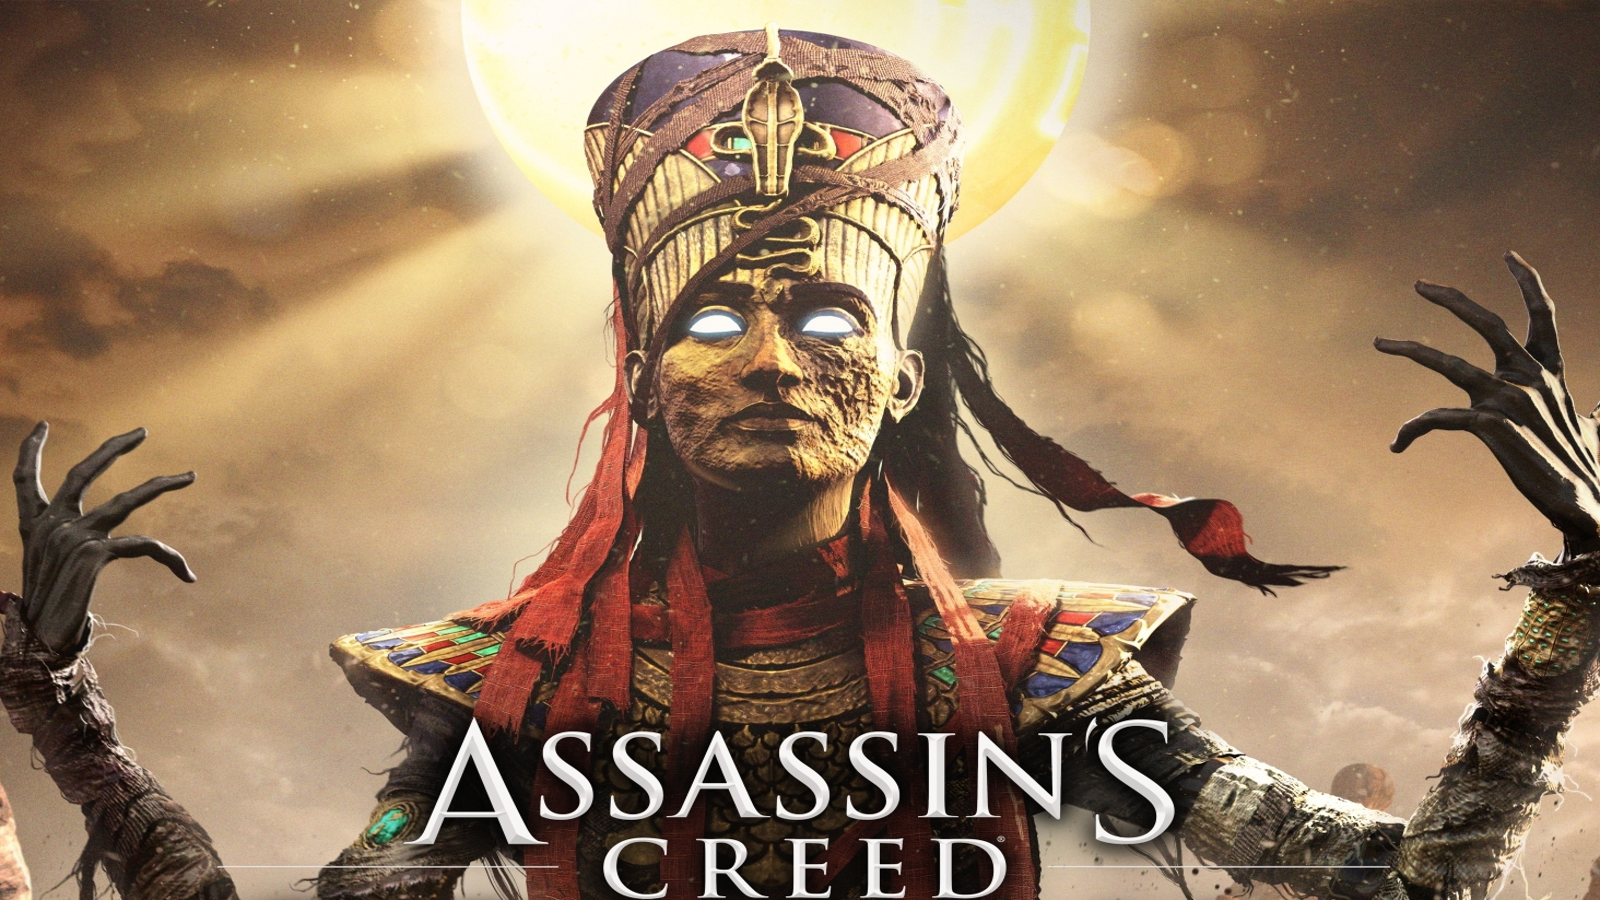 Comunidade Steam :: Assassin's Creed Origins